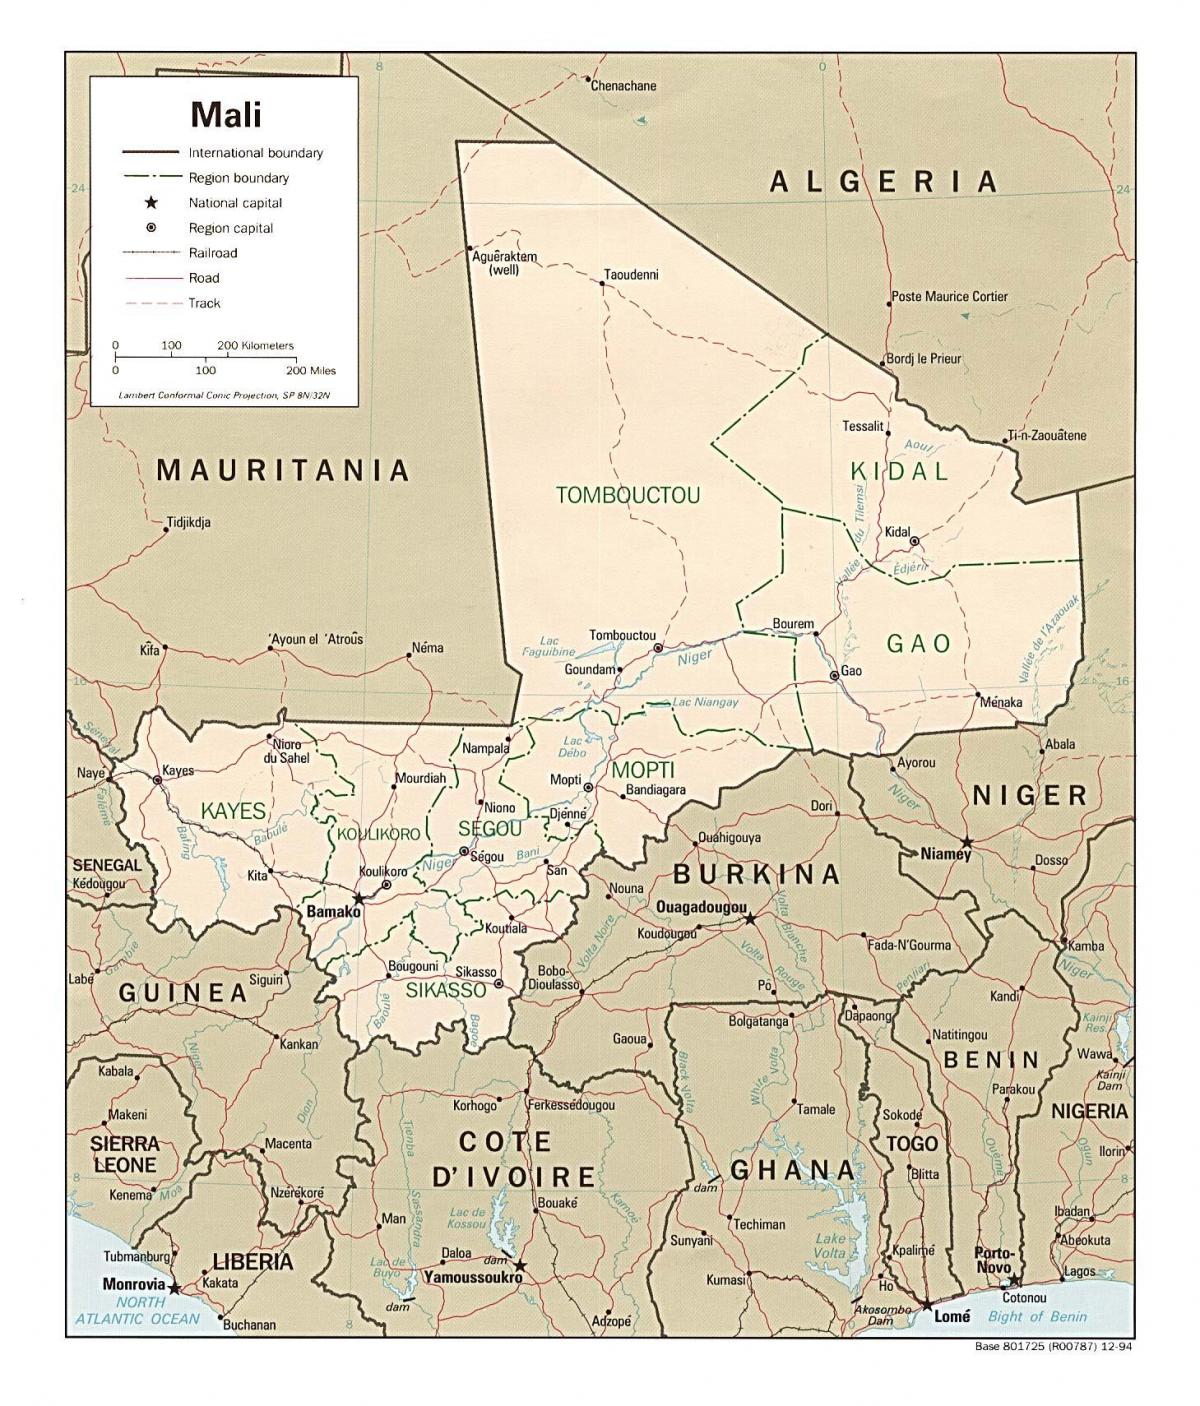 Χάρτης του Μάλι χώρα